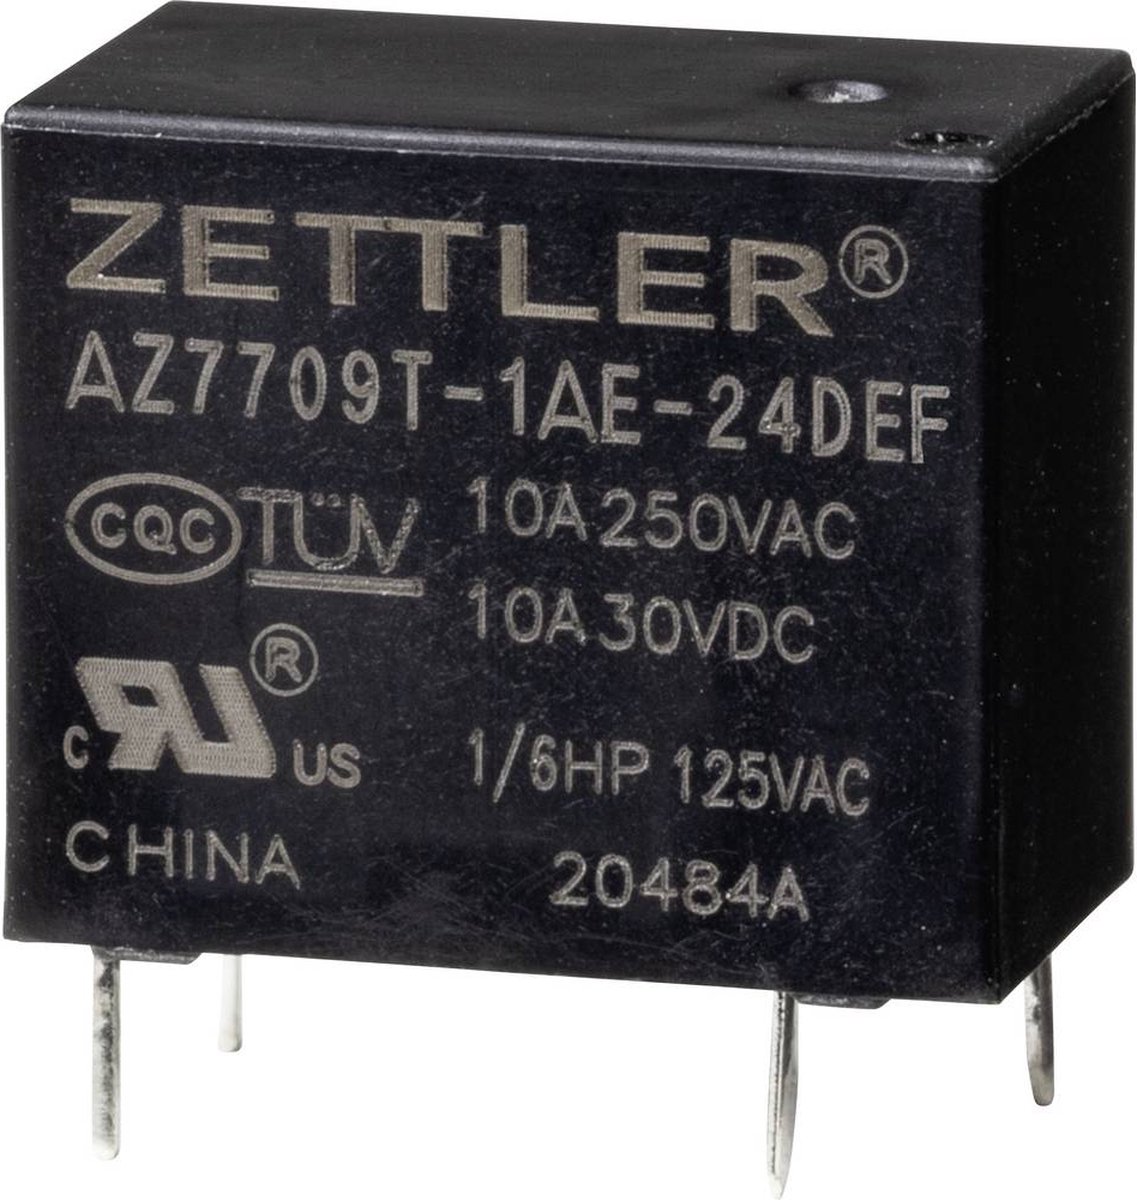 Zettler Electronics AZ7709T-1AE-24DEF Powerrelais 24 V/DC 10 A 1 stuk(s)